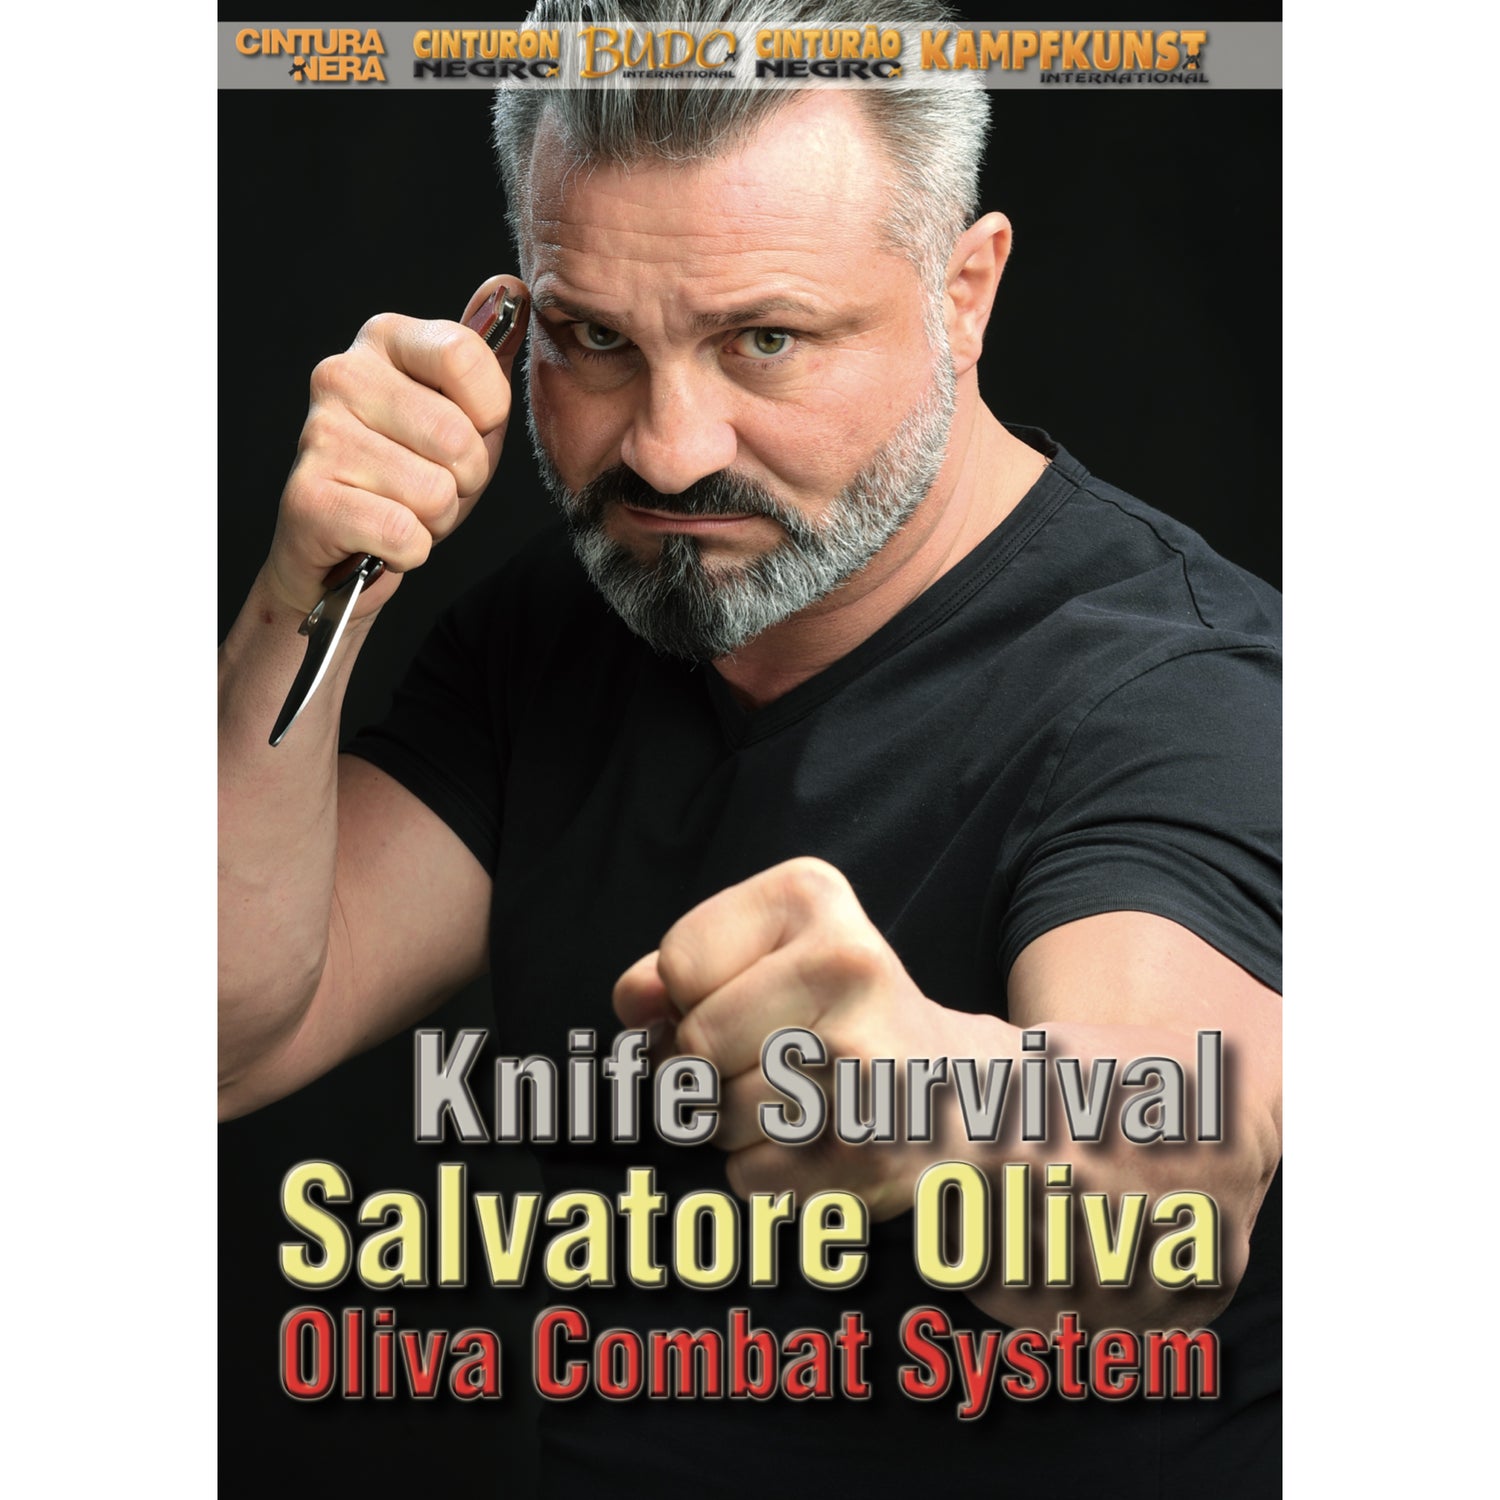 DVD de supervivencia con cuchillos de Salvatore Oliva (bajo demanda)